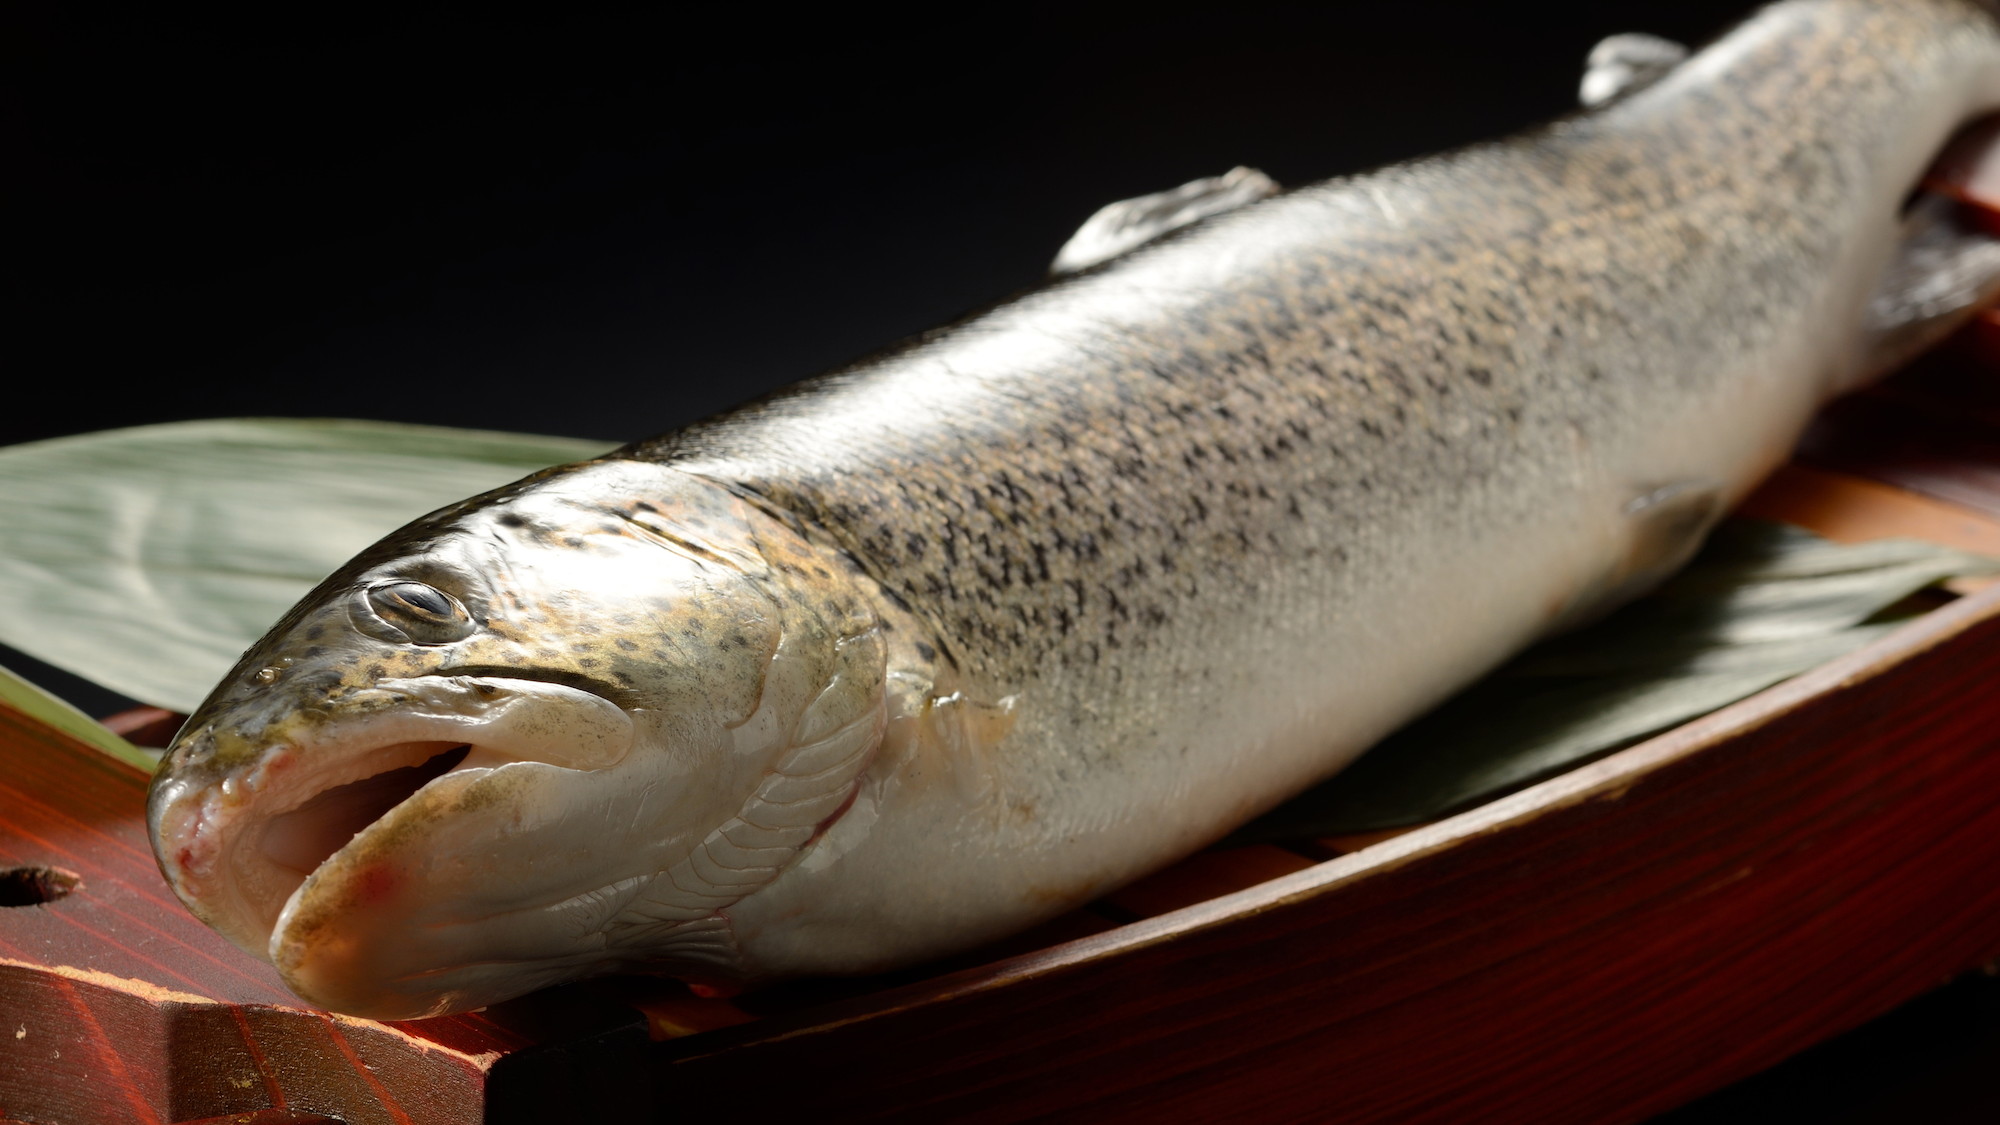 鰺ヶ沢町で、白神山地の清水を使用して養殖されている、幻の魚「イトウ」